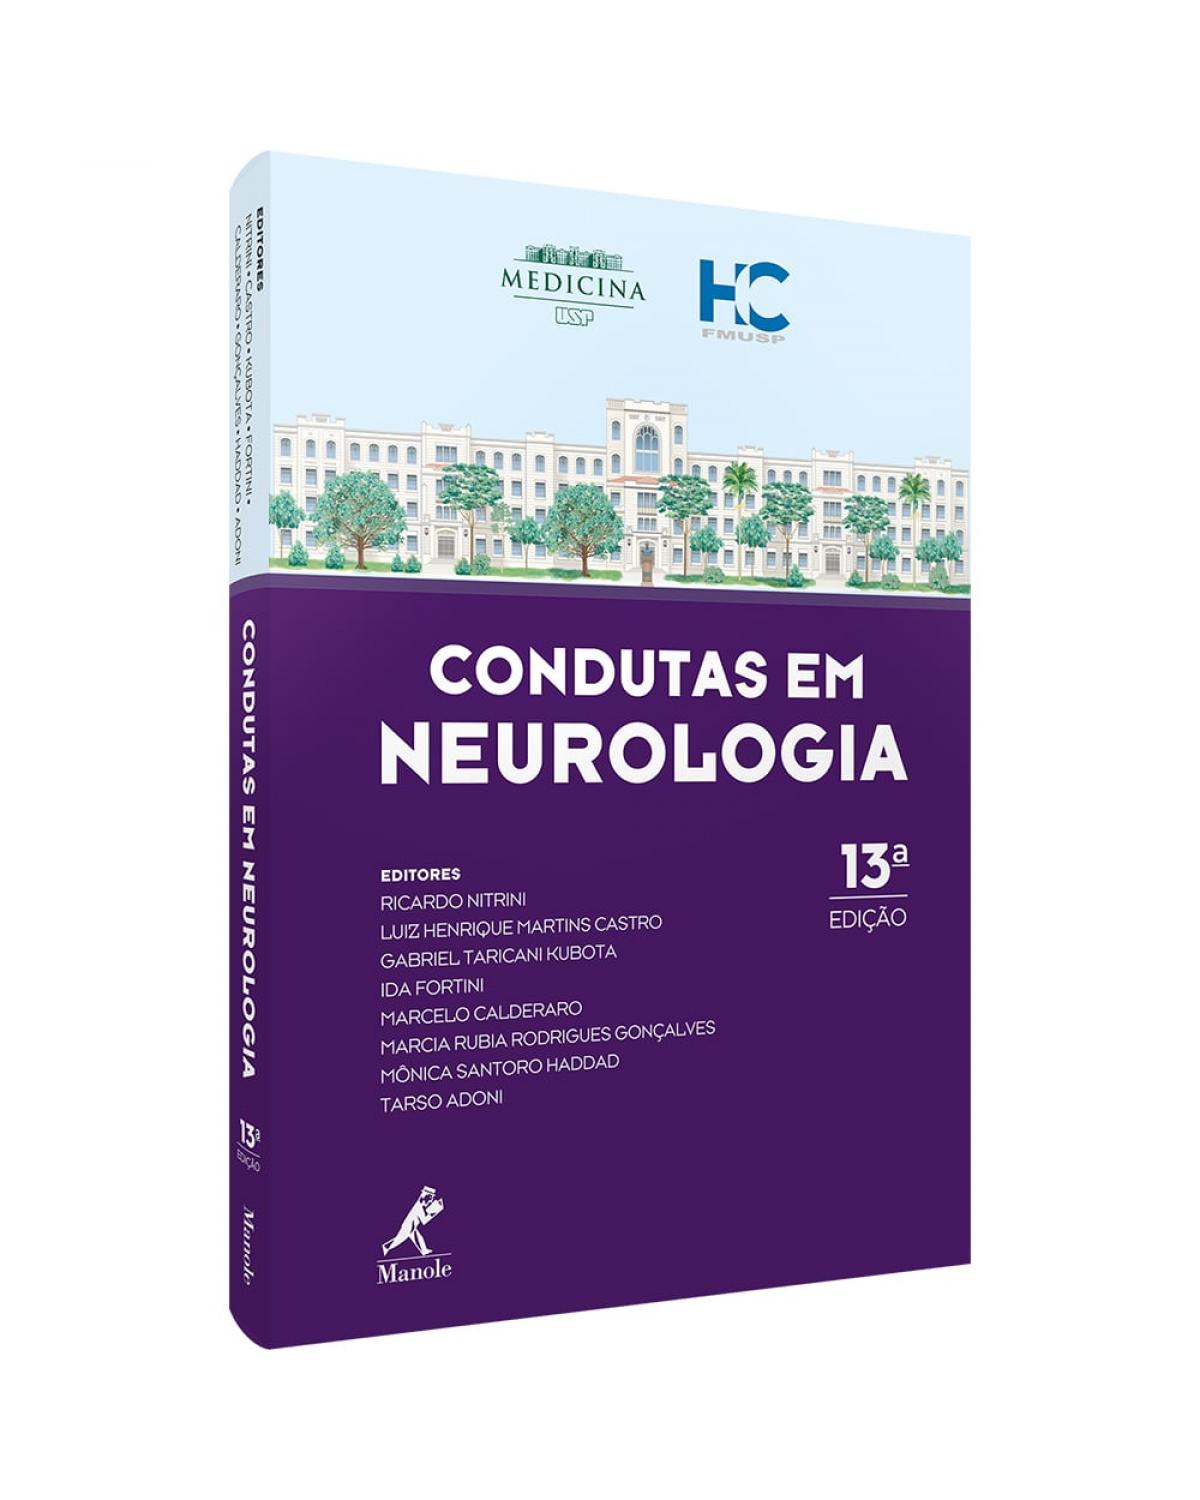 Condutas em neurologia - 13ª Edição | 2020